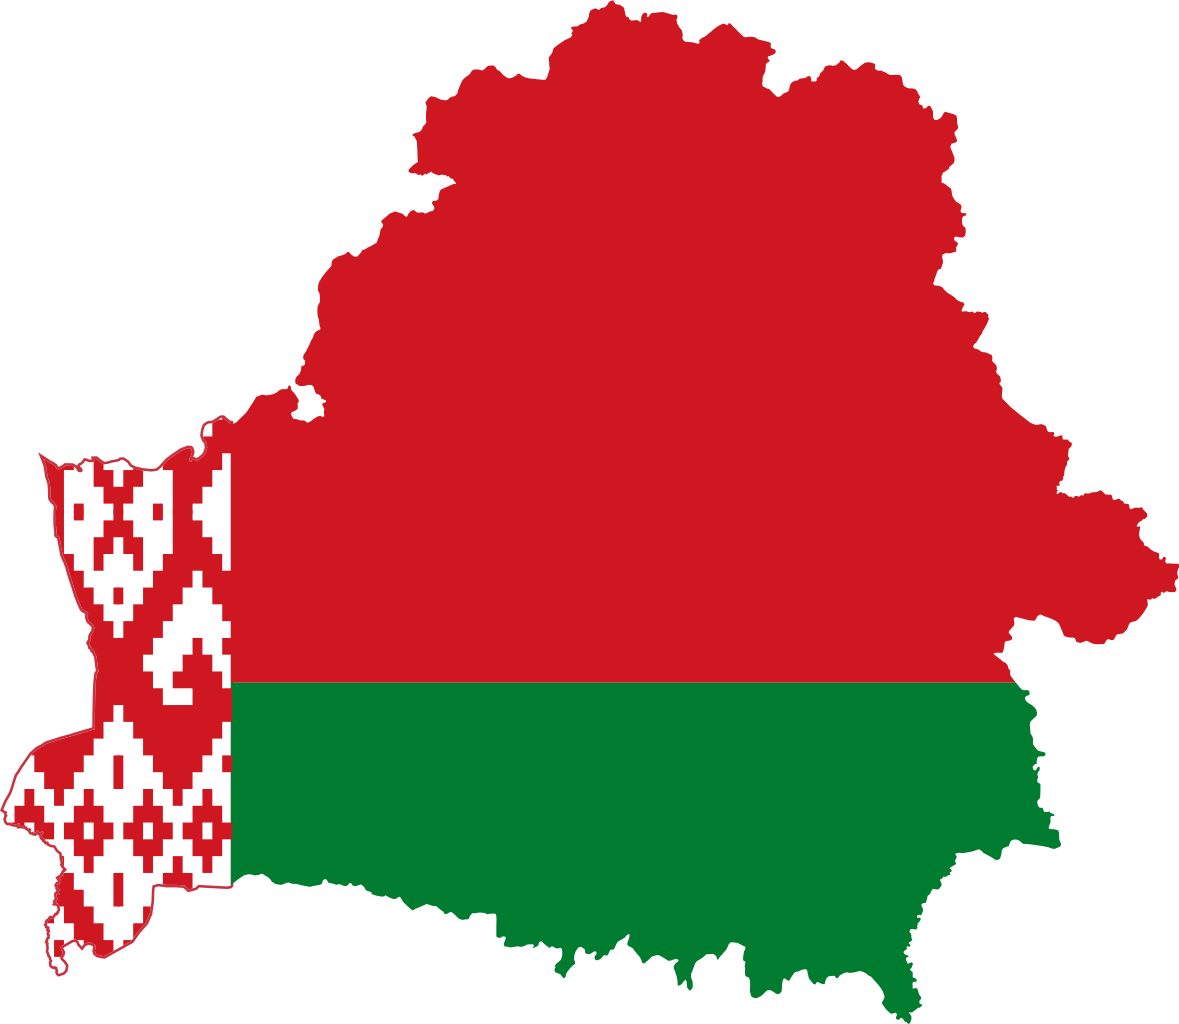 Belarus Flag PNG HD Quality